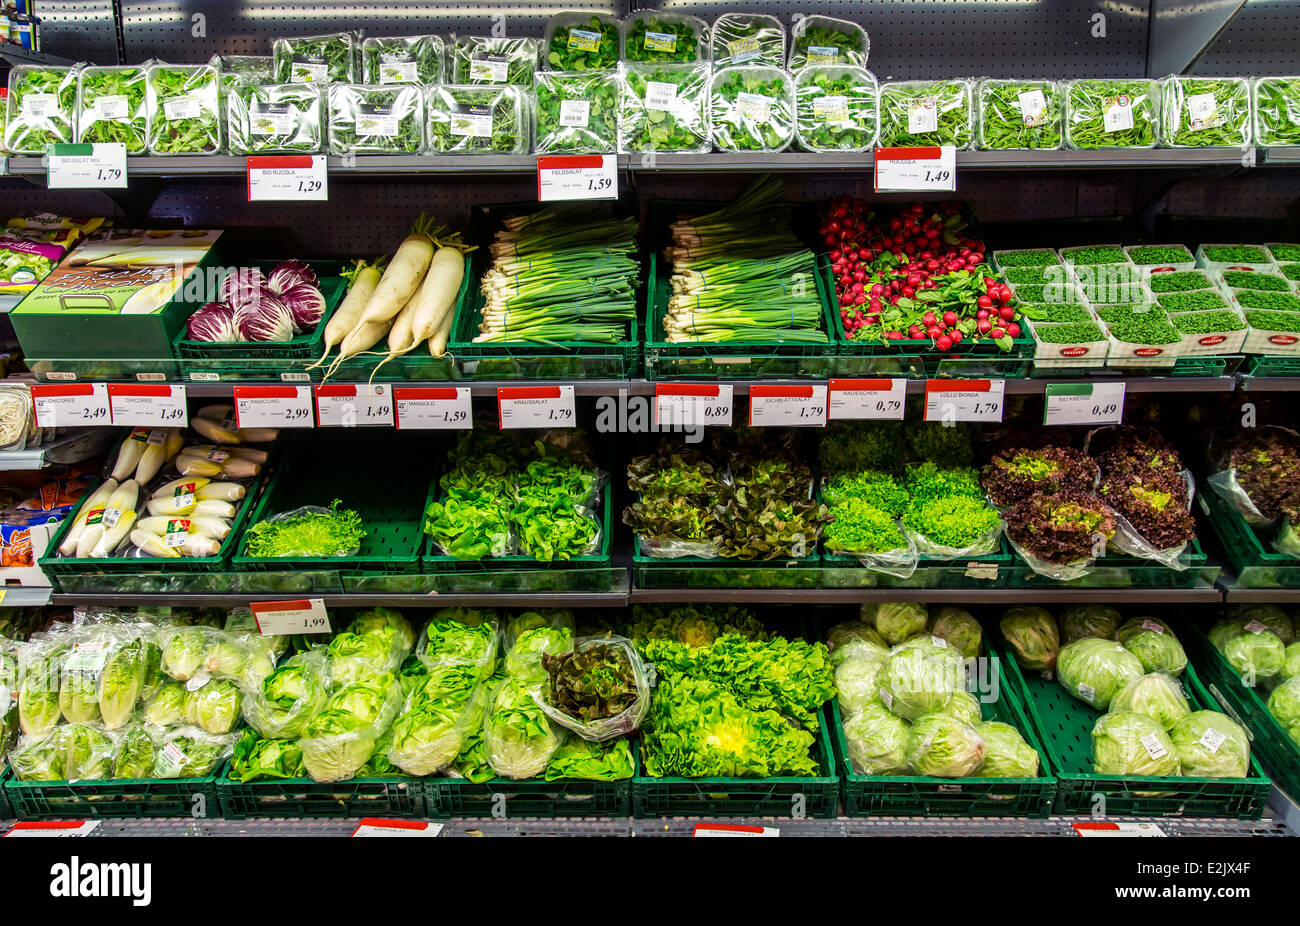 La tablette avec de la nourriture dans un supermarché. Réfrigéré, salade, légumes, paniers en plastique, Banque D'Images